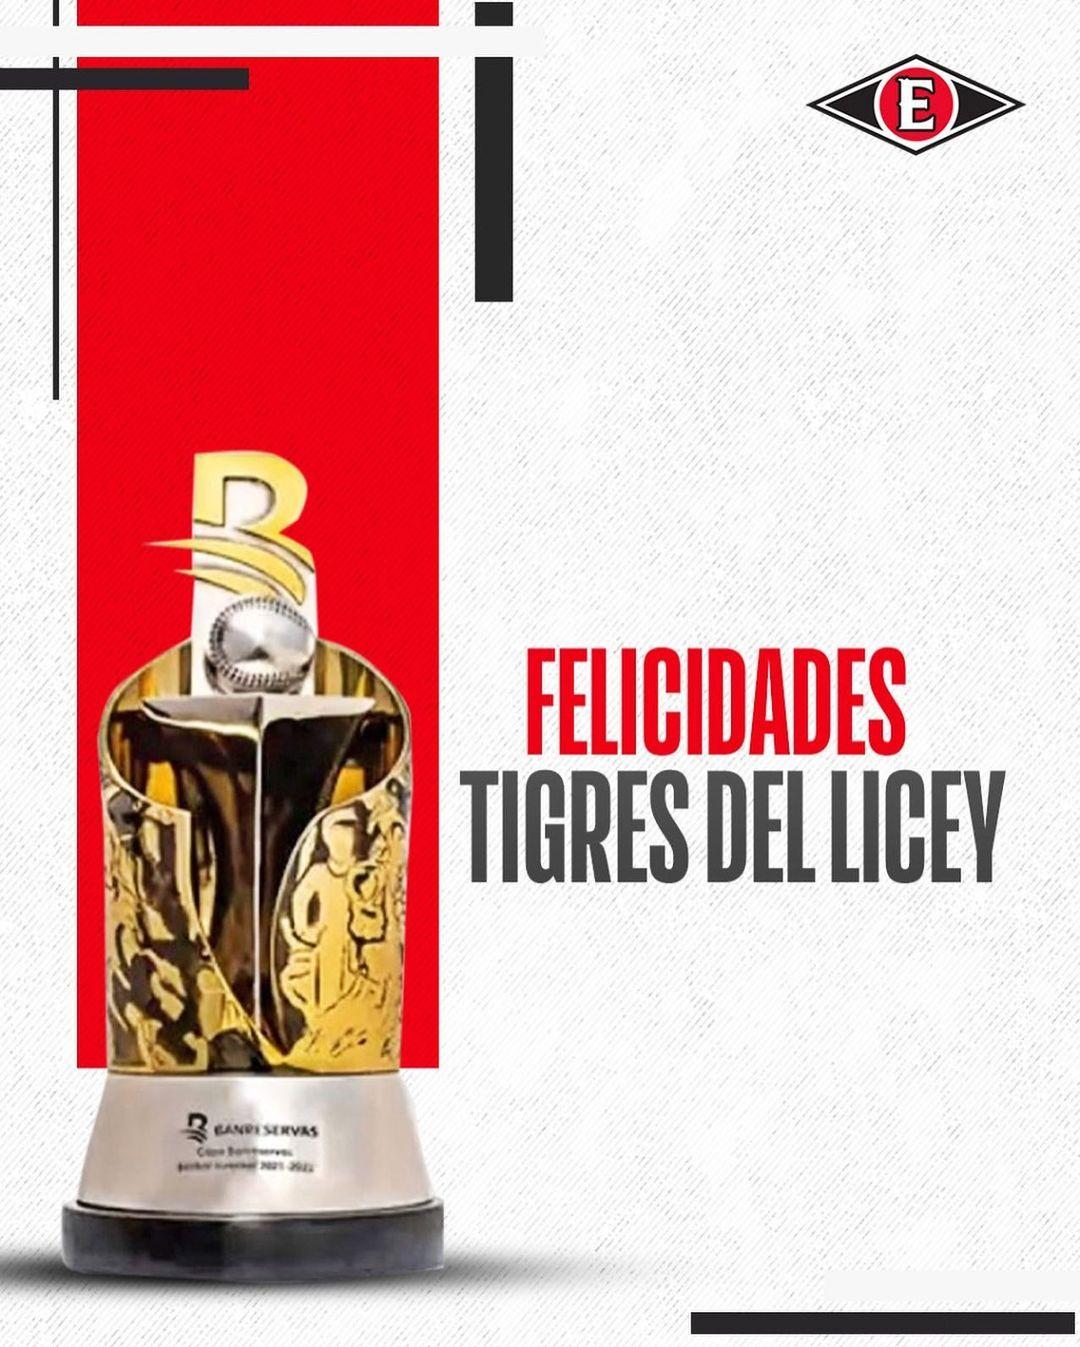 class="content__text"
 Felicidades a los @TigresdelLicey por el campeonato 2022-2023. 🦁 
 